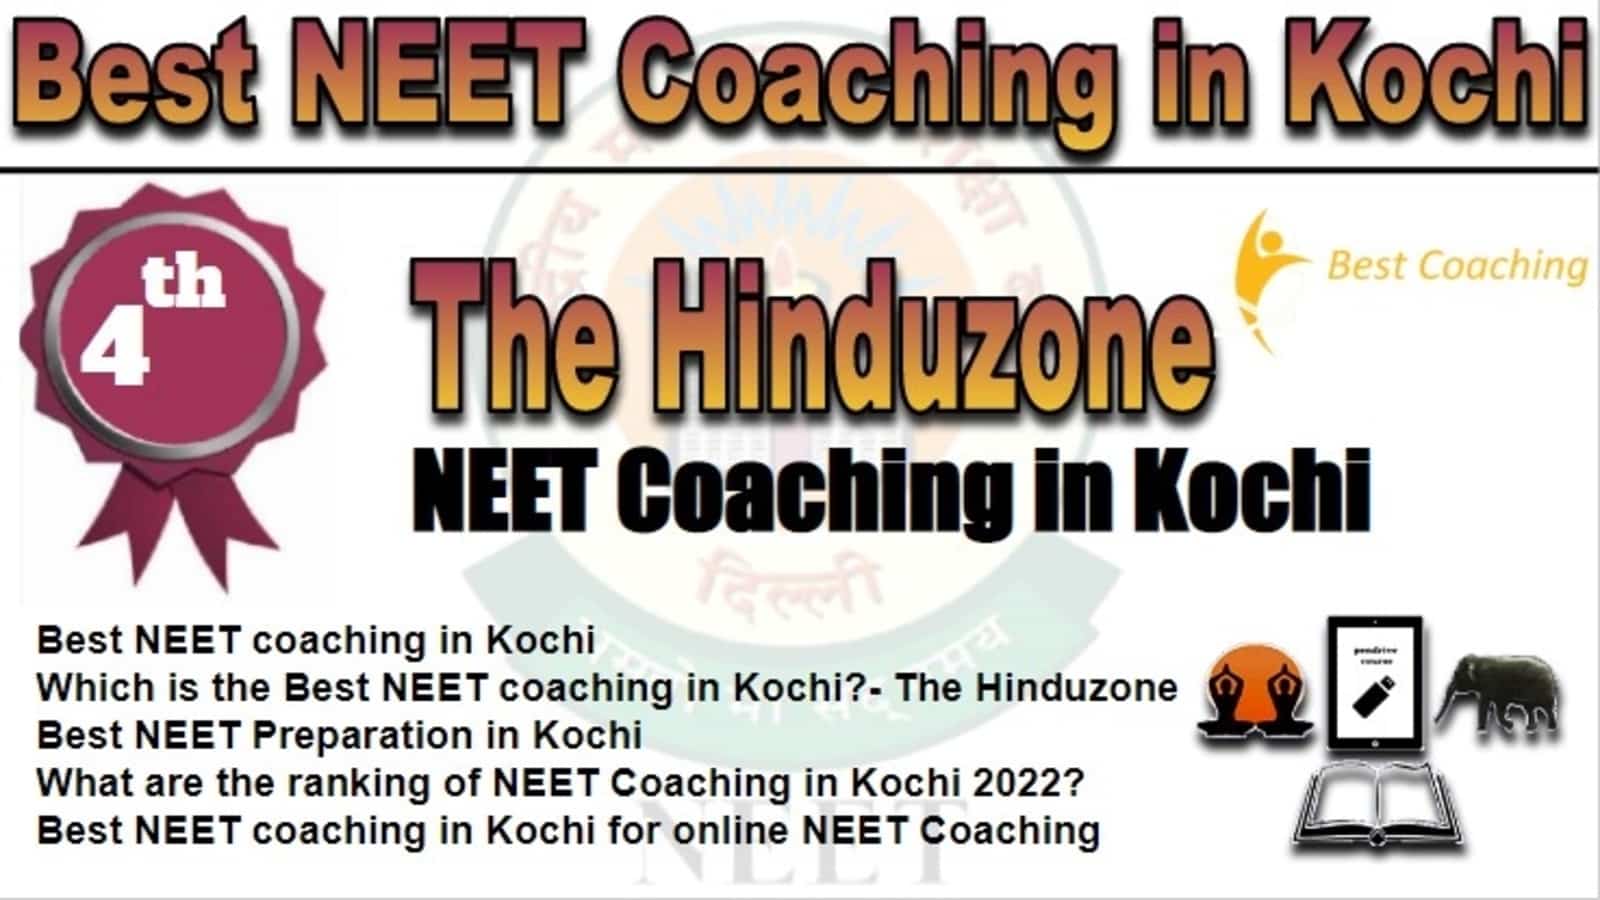 Rank 4 Best NEET Coaching in Kochi